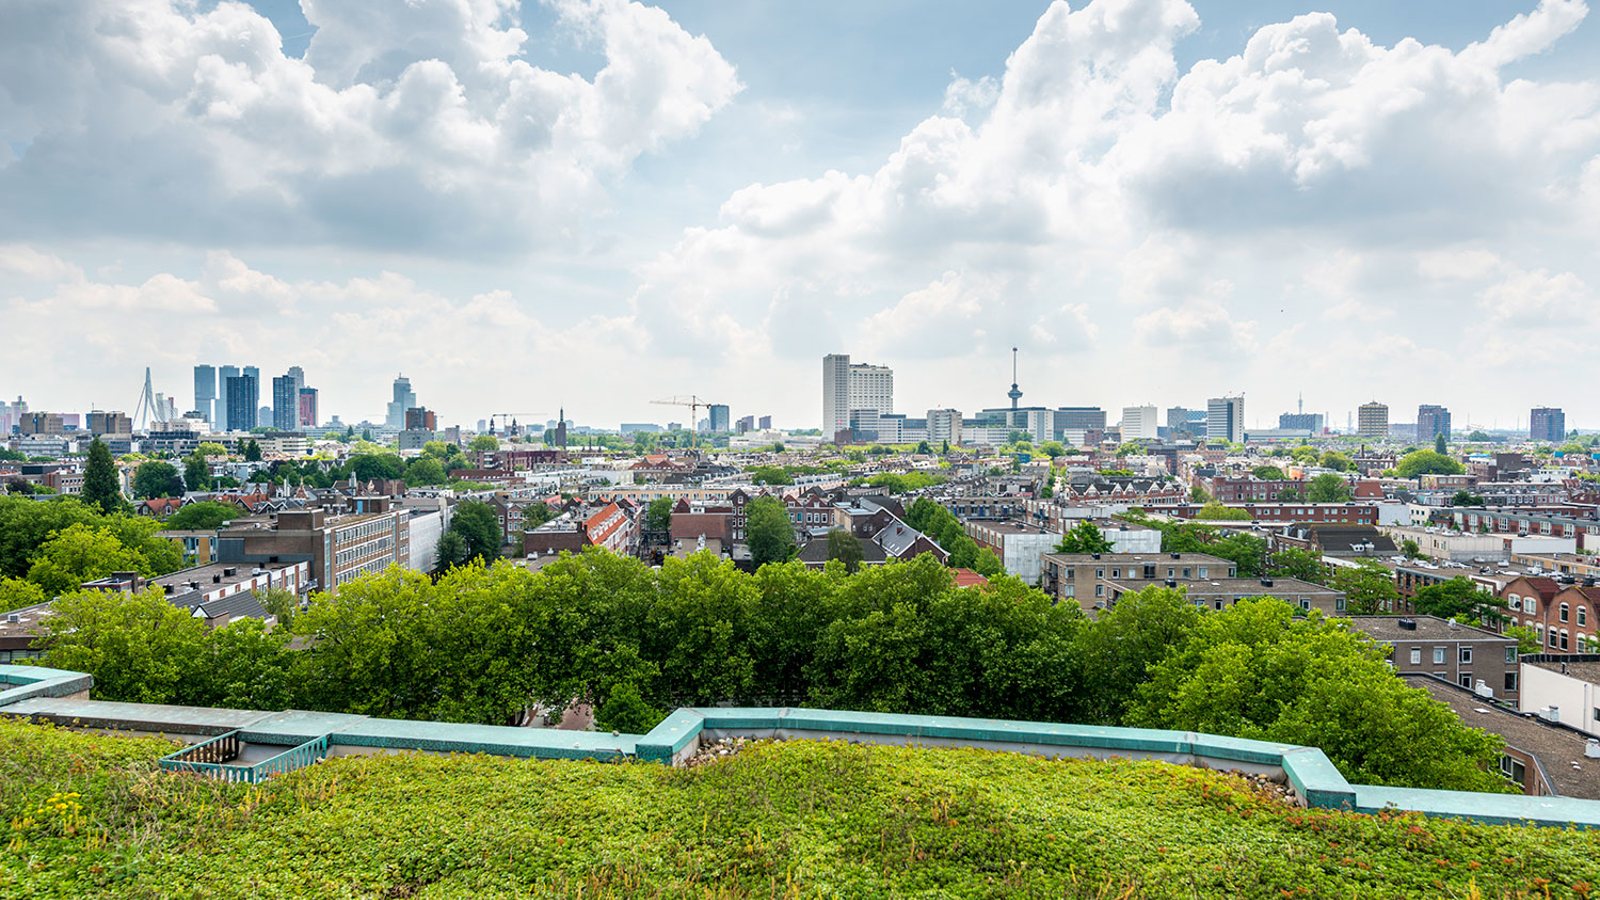 Uitzicht op een stad met groen duurzaam dak